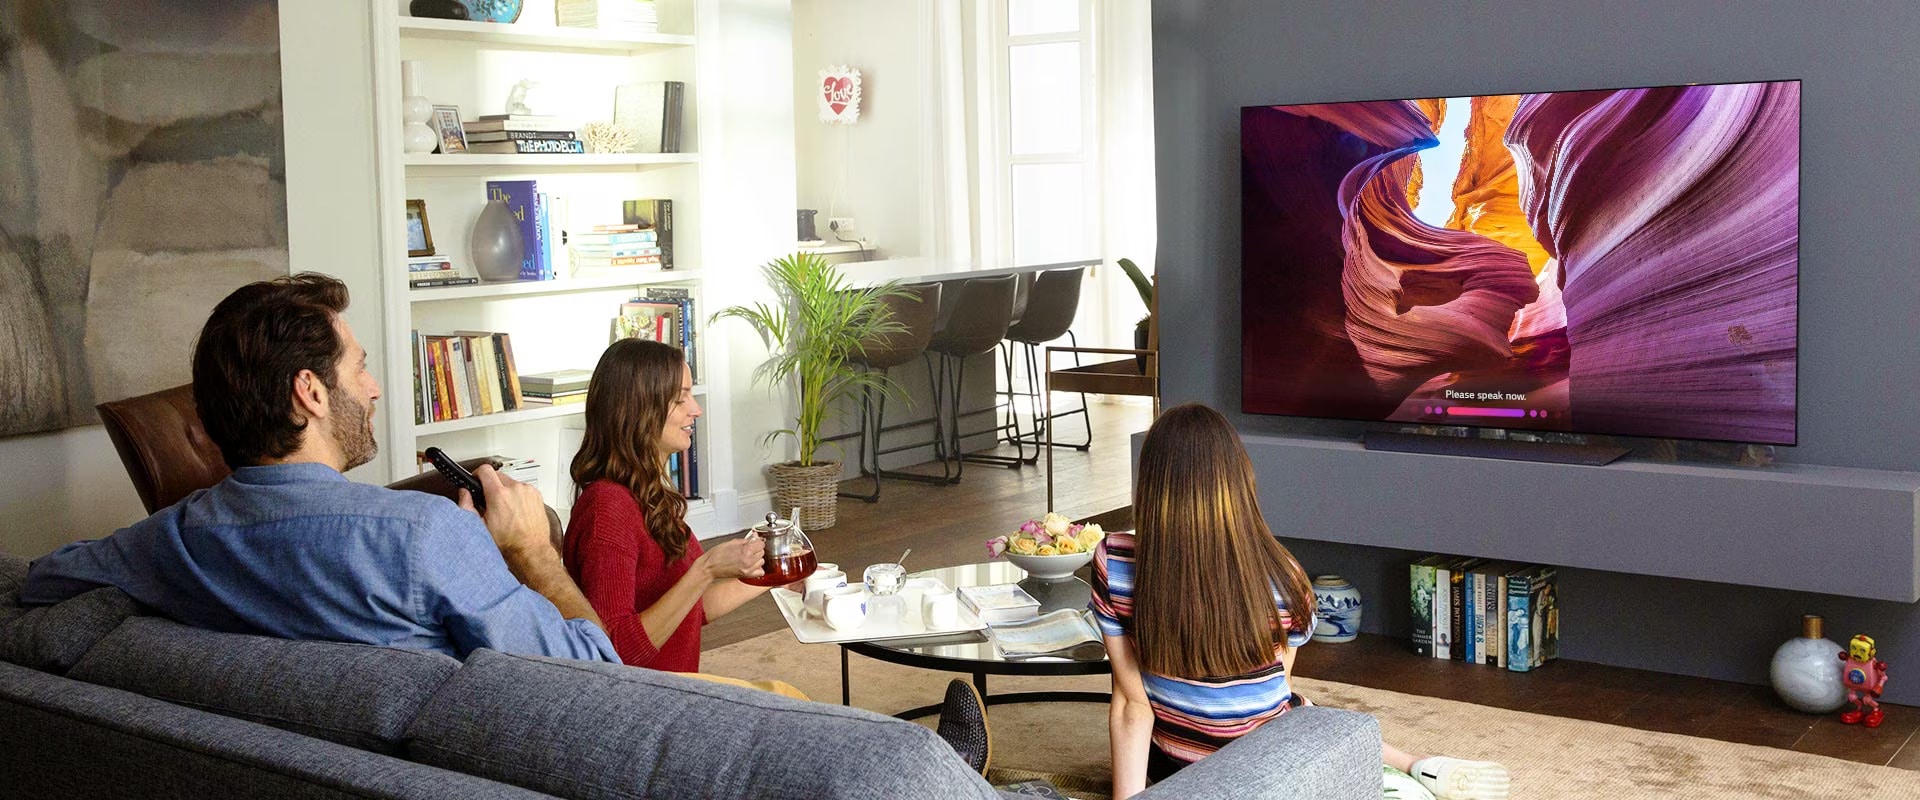 Proiettore vs. TV: scopri la migliore tecnologia di visualizzazione per le  tue esigenze